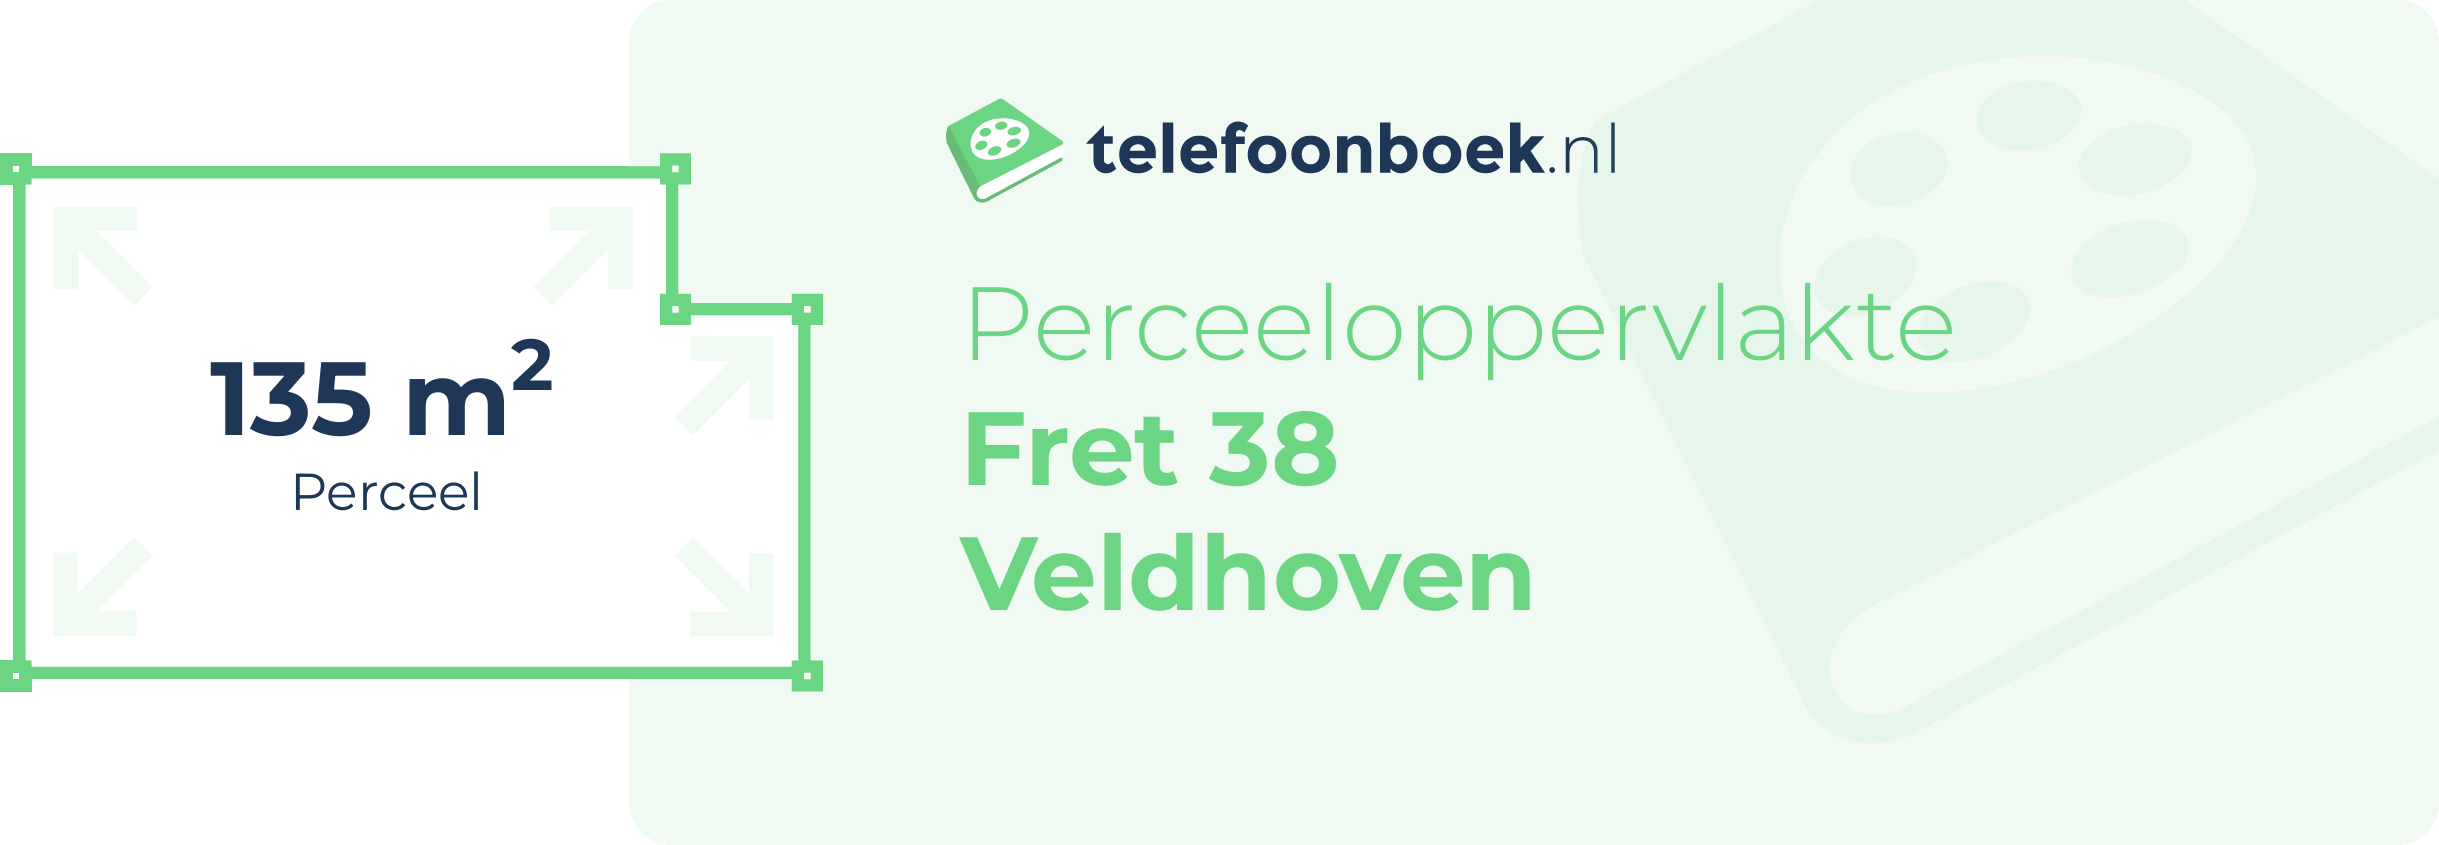 Perceeloppervlakte Fret 38 Veldhoven